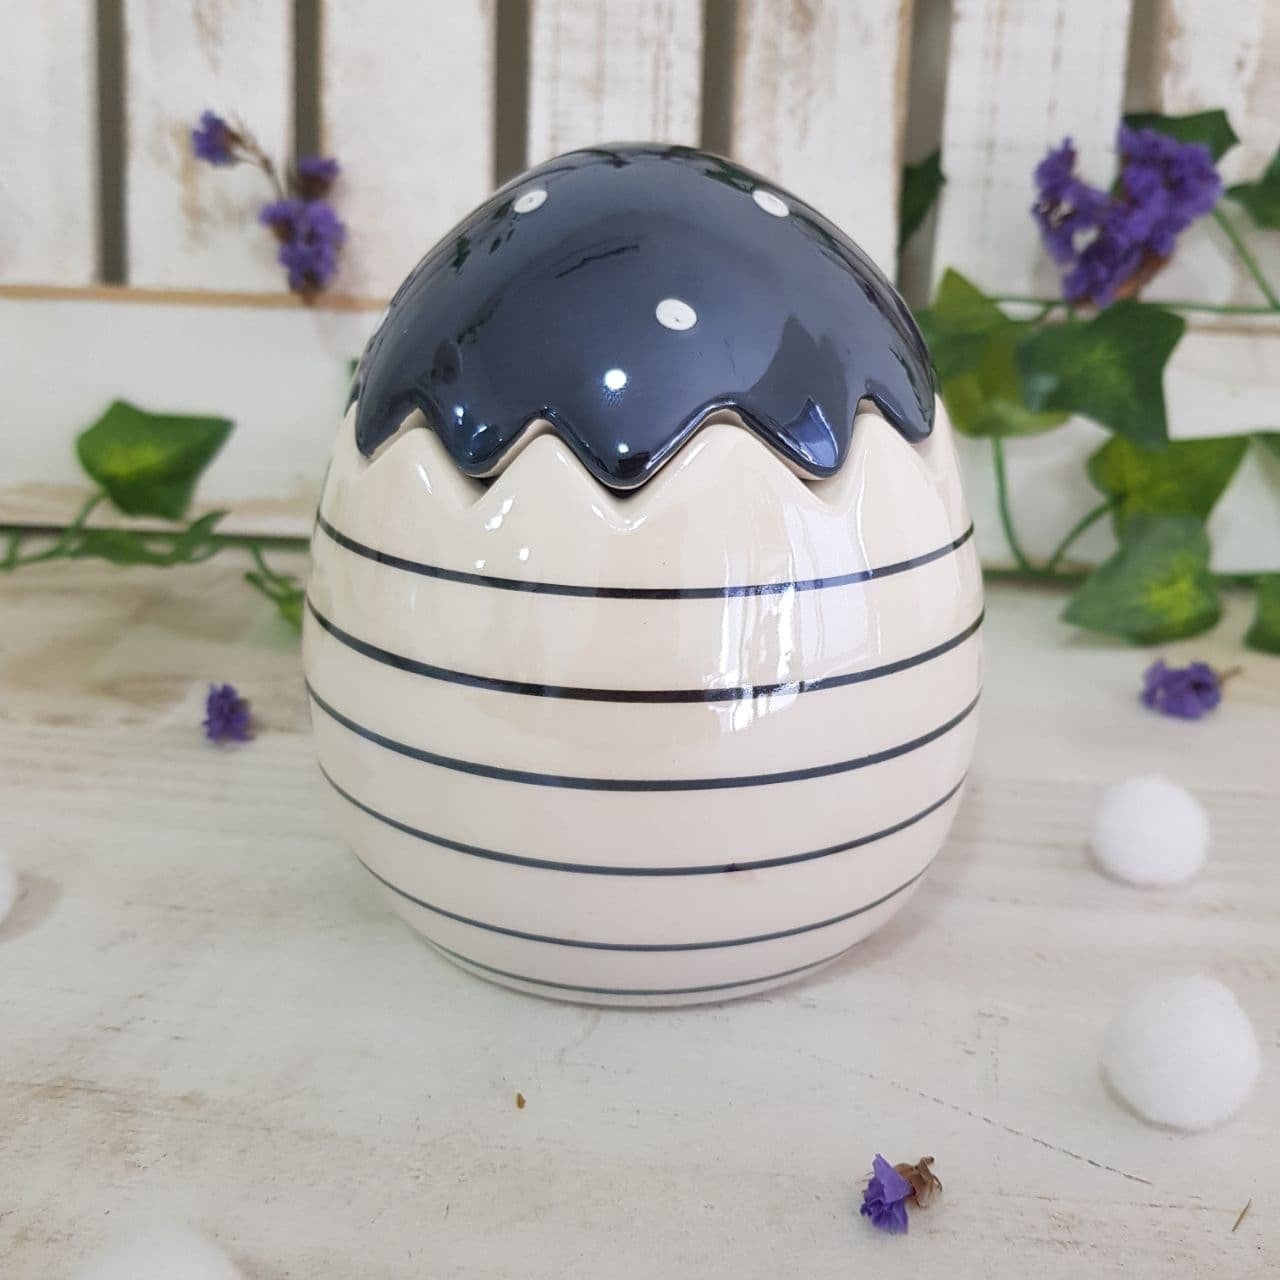 ovo decorativo ceramica perola branco com azul 1827382 cromus casa cafe mel 2